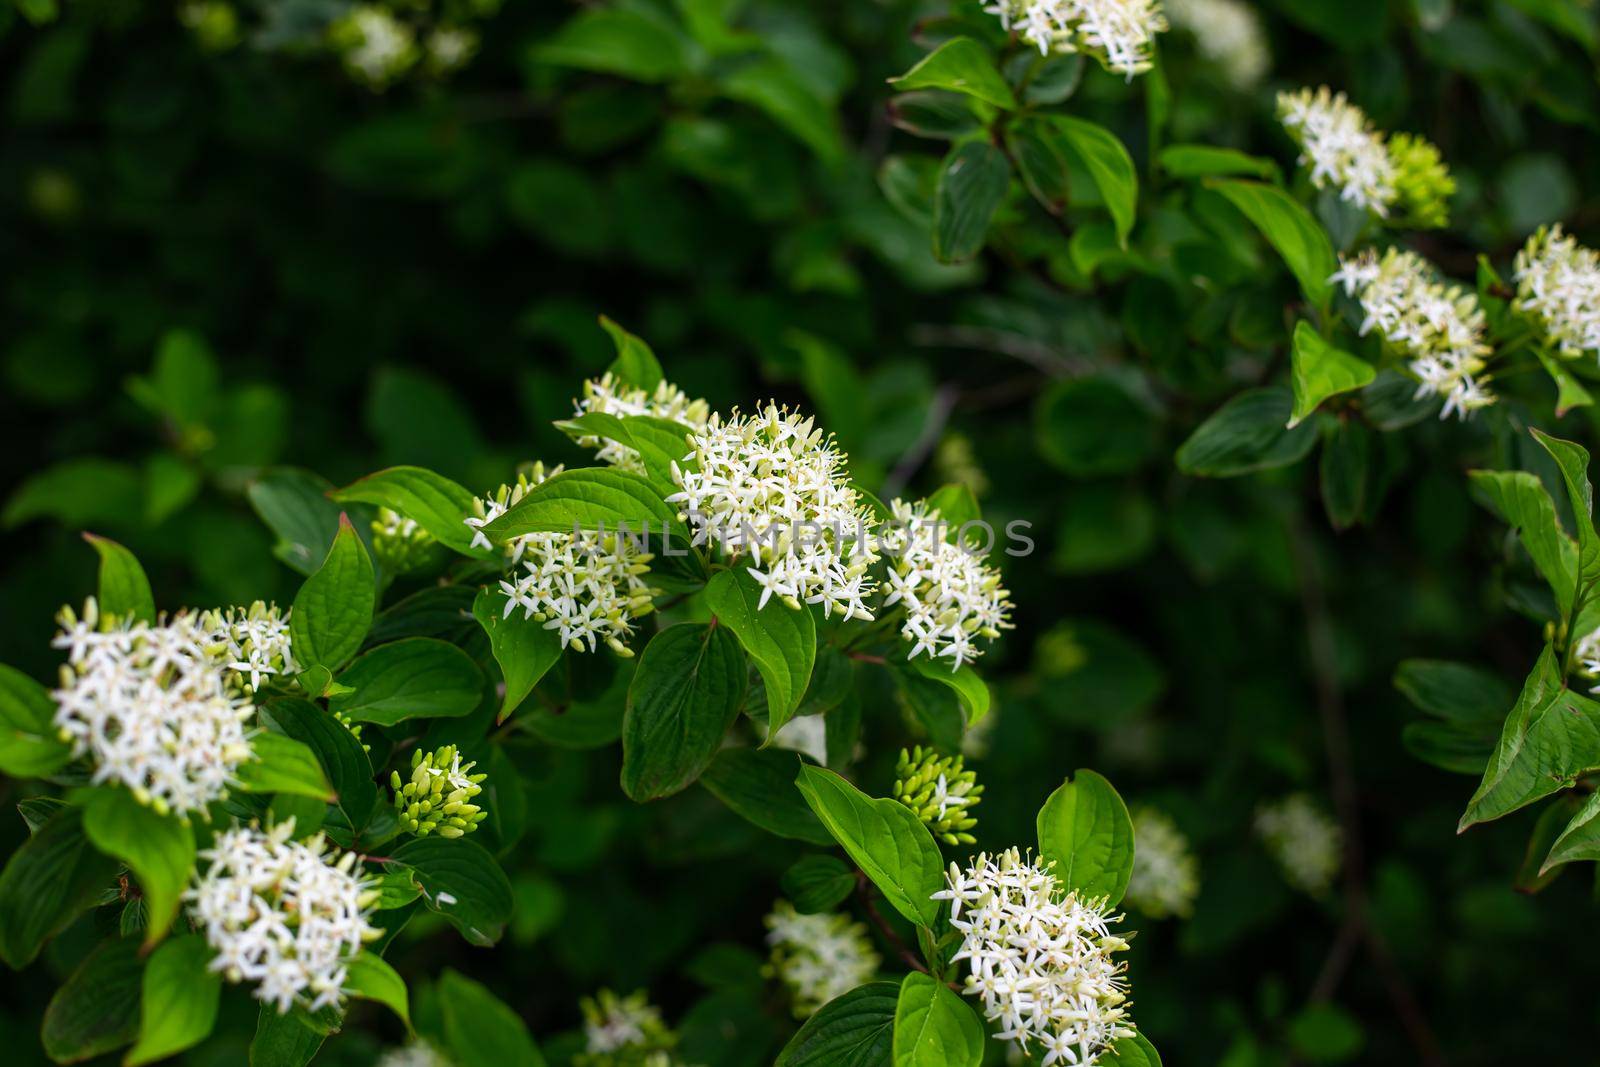 White inflorescence on an elderberry bush. Dark green vegetable background.